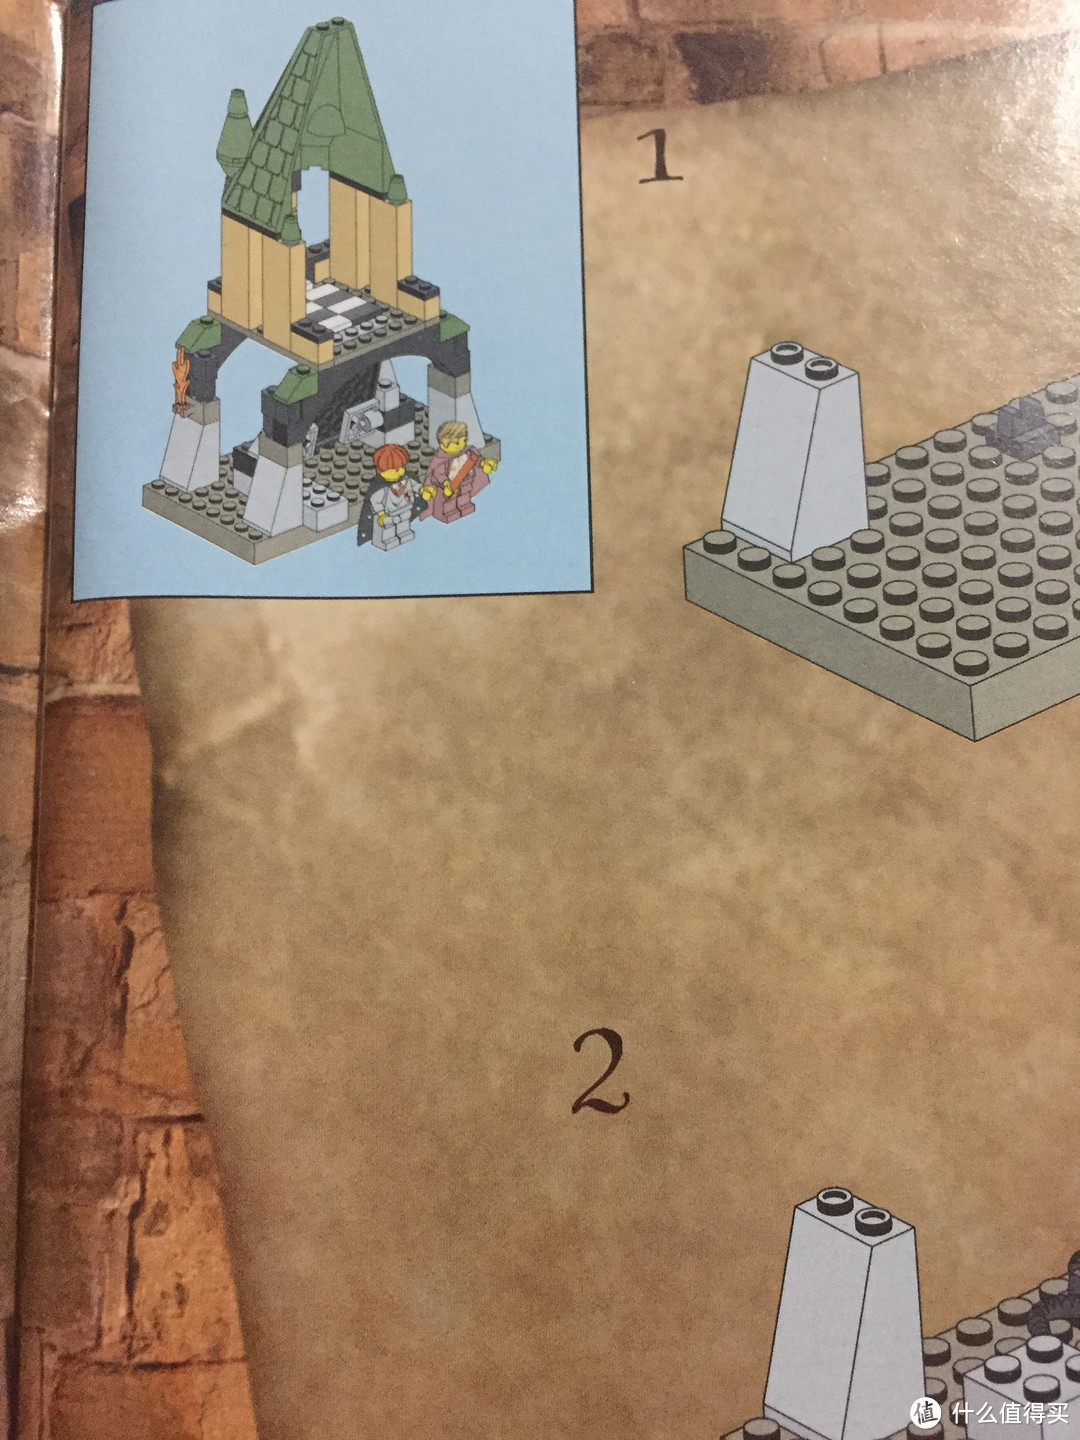 LEGO 乐高 4730 哈利波特系列 密室